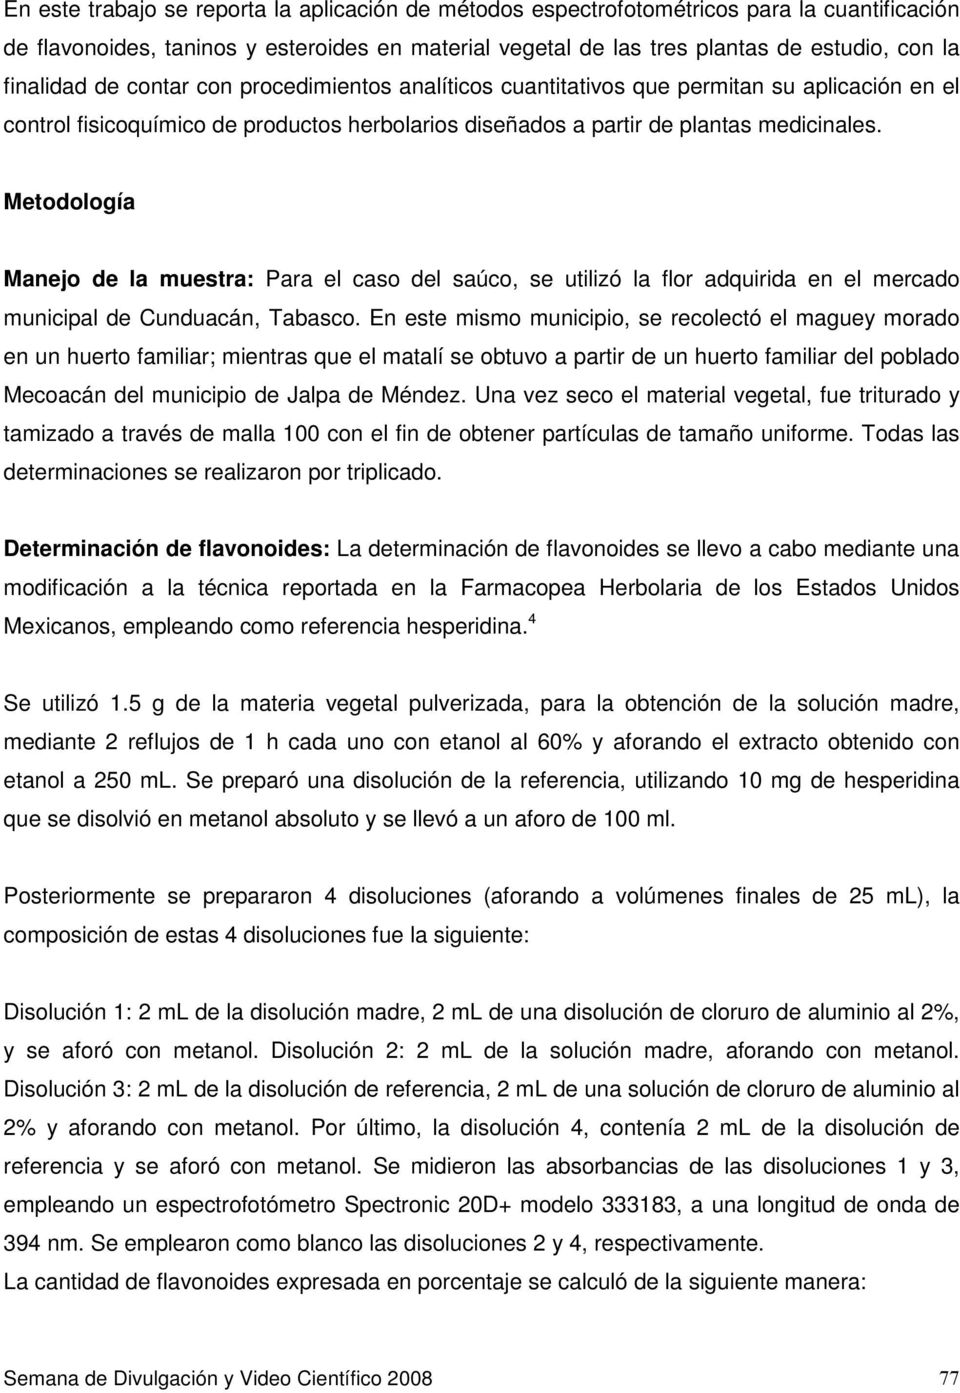 Metodología Manejo de la muestra: Para el caso del saúco, se utilizó la flor adquirida en el mercado municipal de Cunduacán, Tabasco.